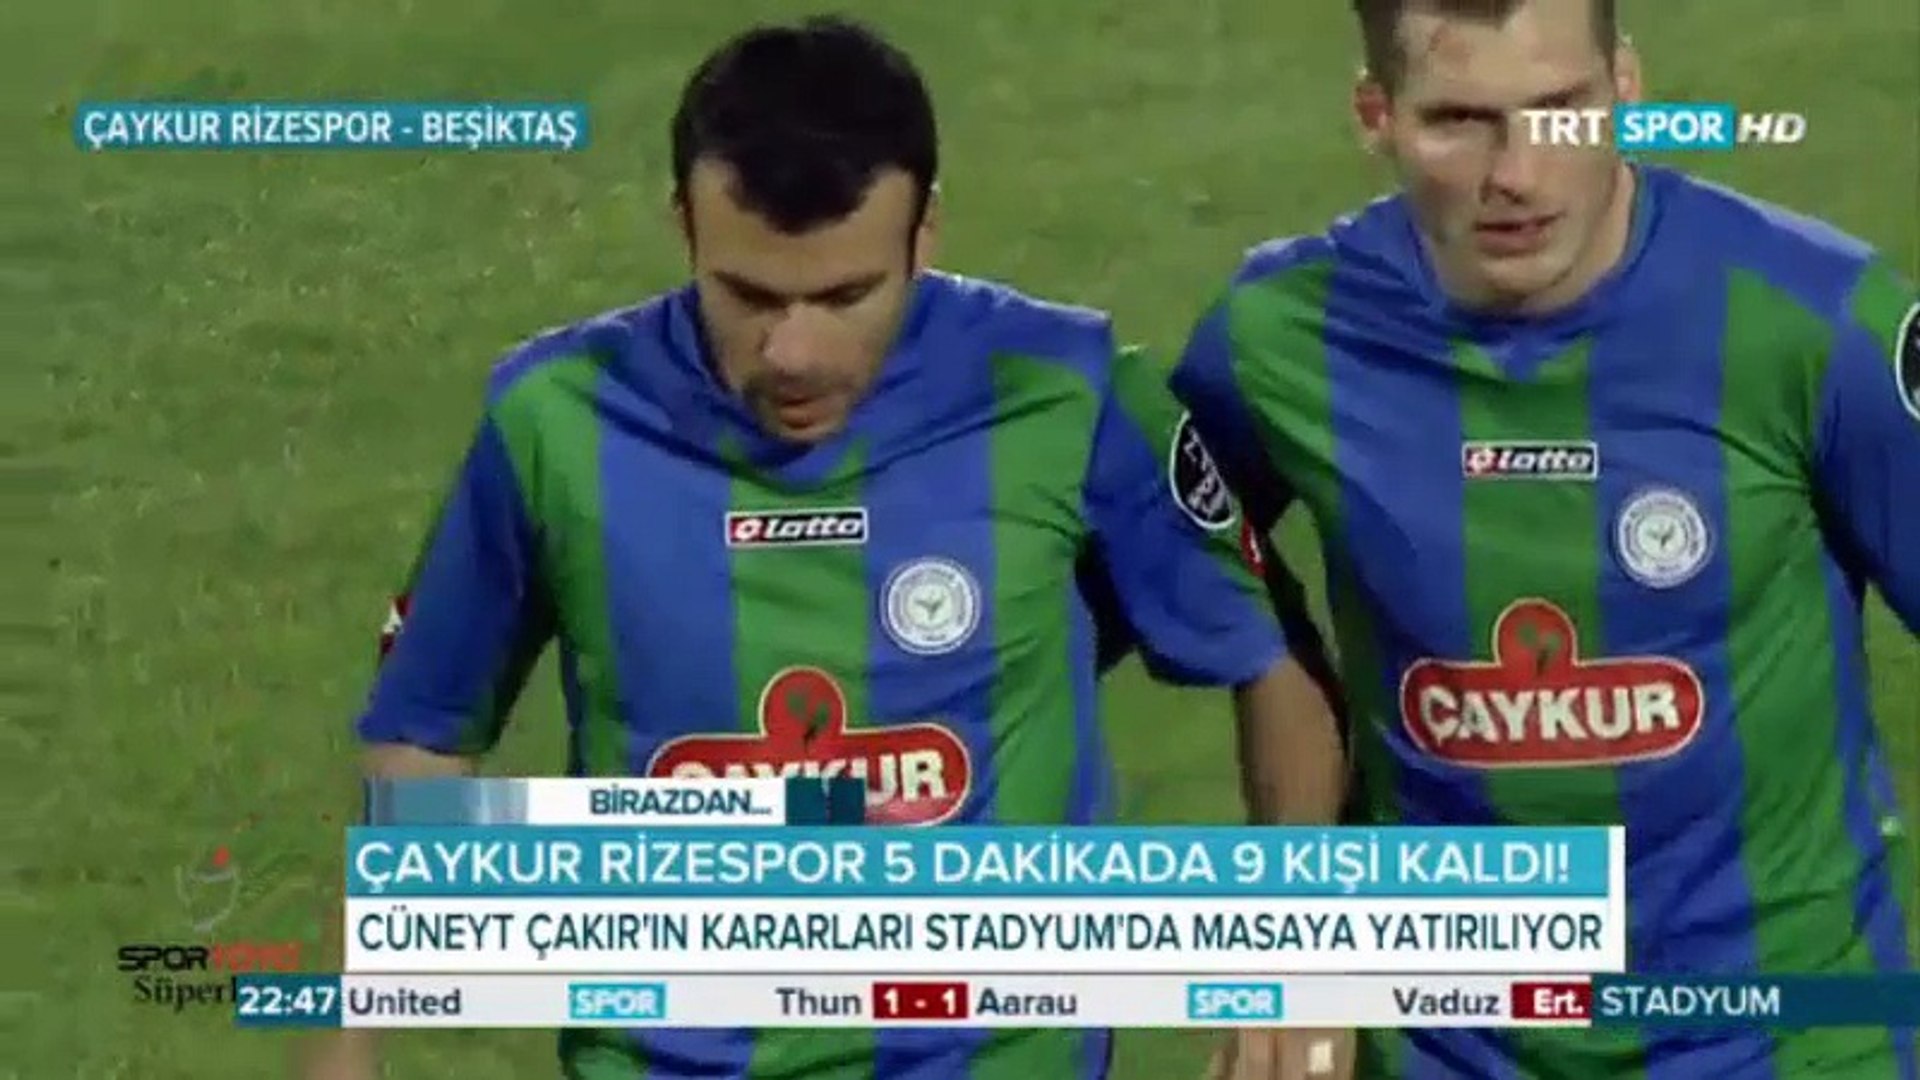 Çaykur Rizespor - Beşiktaş Maçı Özeti - Golleri - Dailymotion Video